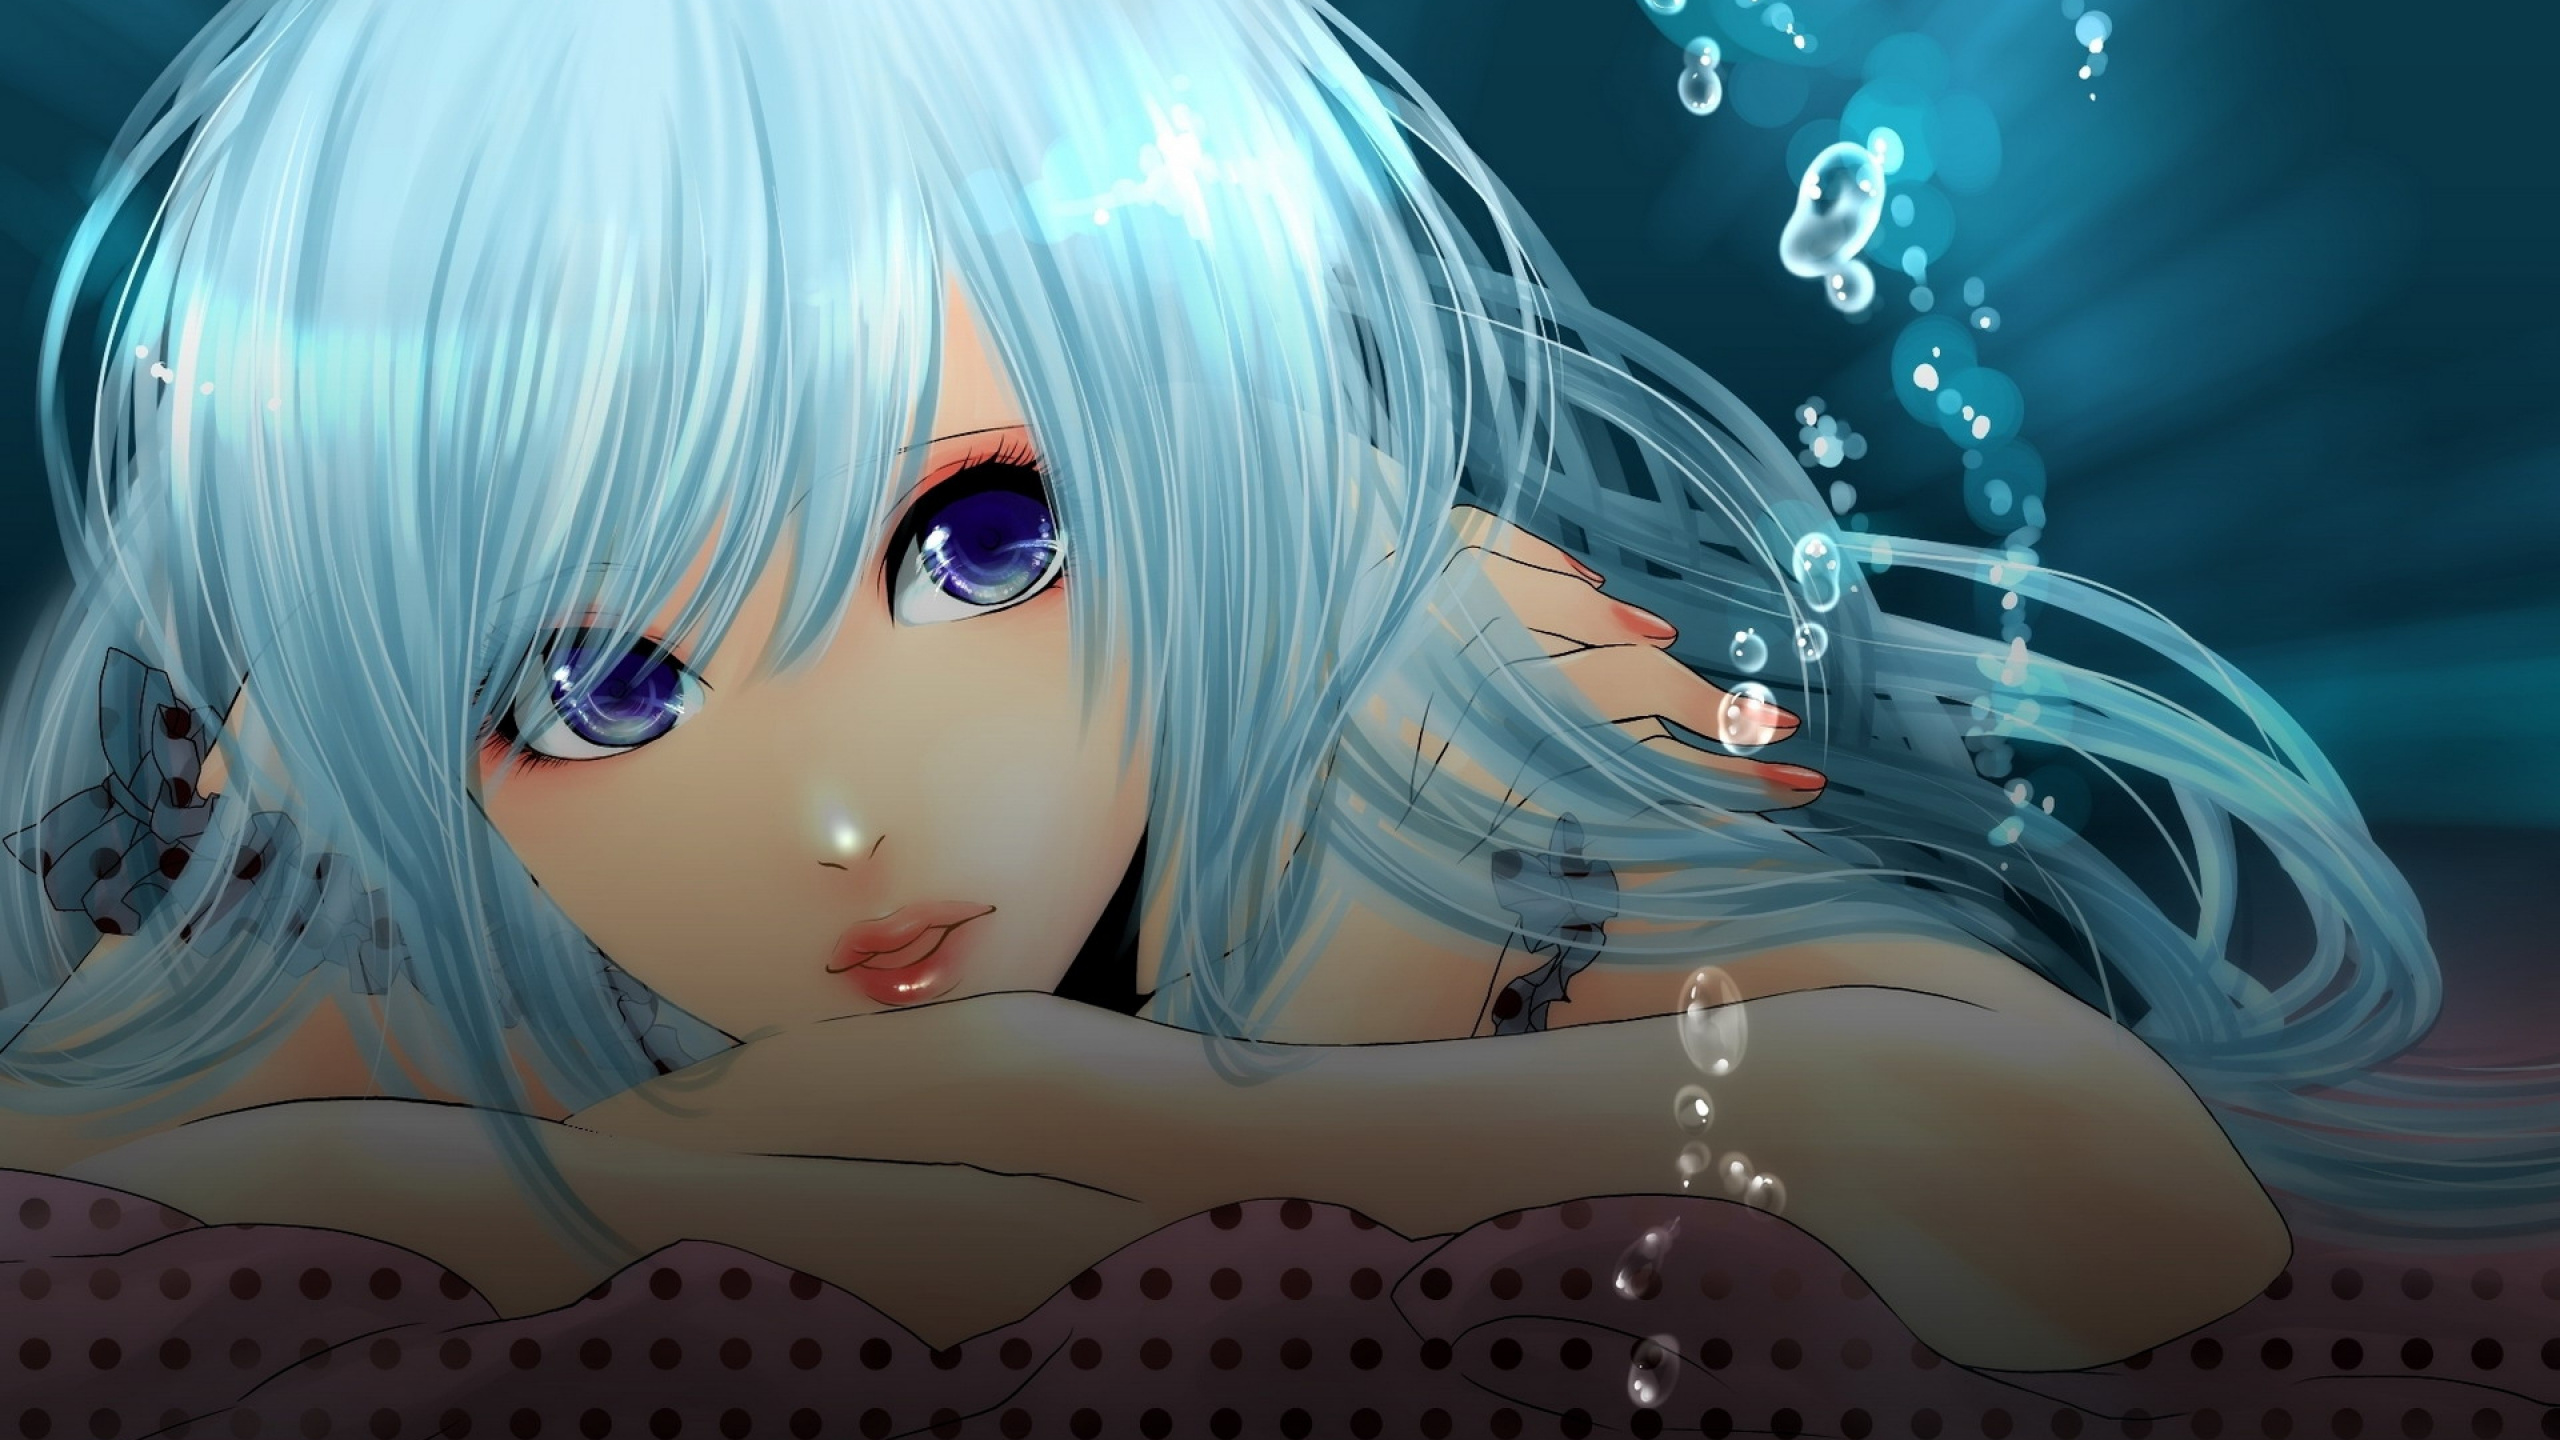 Personnage D'anime Féminin Aux Cheveux Bleus. Wallpaper in 2560x1440 Resolution